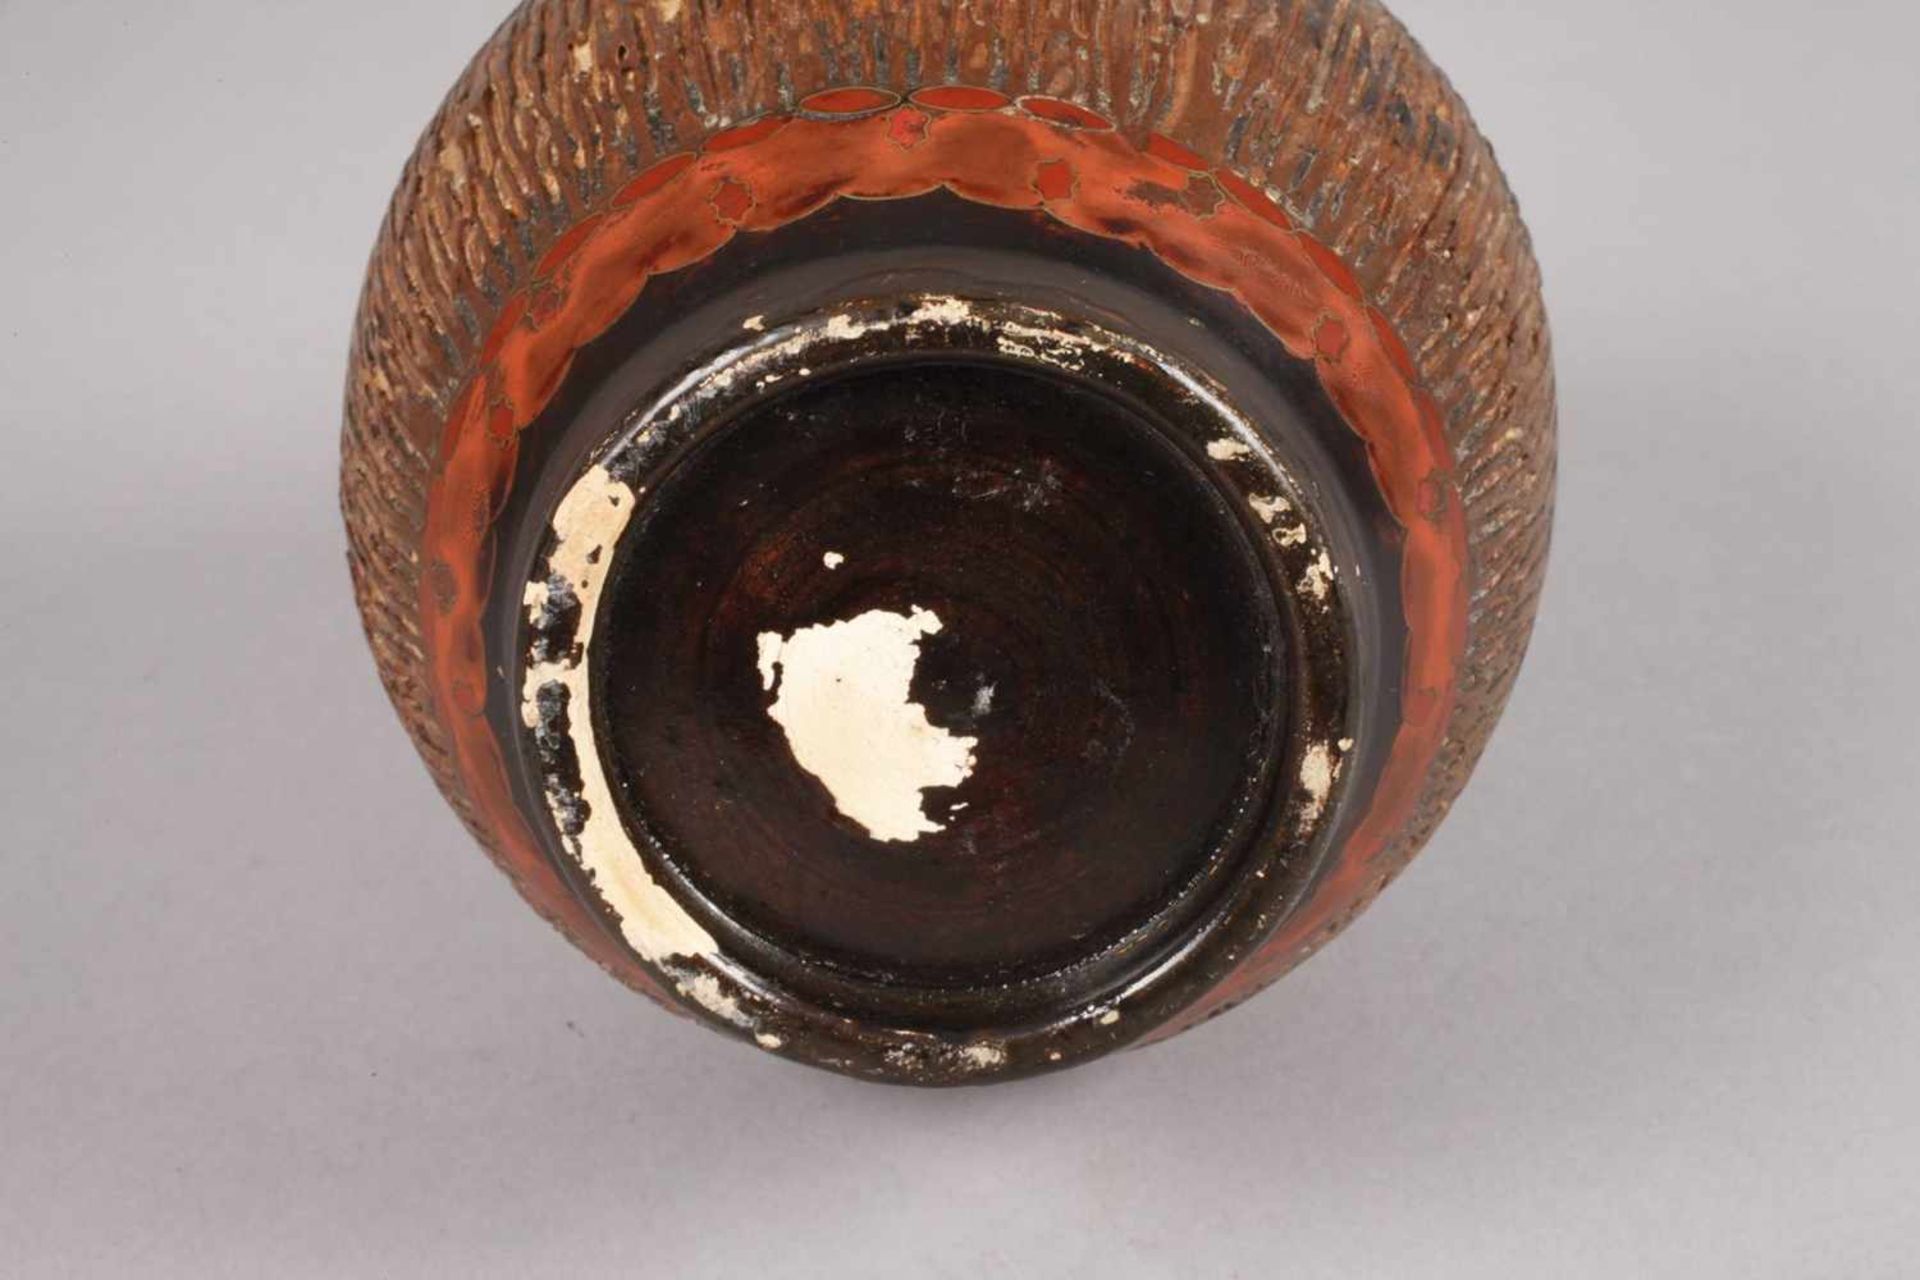 Vase mit Cloisonnéauflagenum 1900, ungemarkt, Steingut geritzt und matt bemalt, die Oberfläche in - Bild 3 aus 4